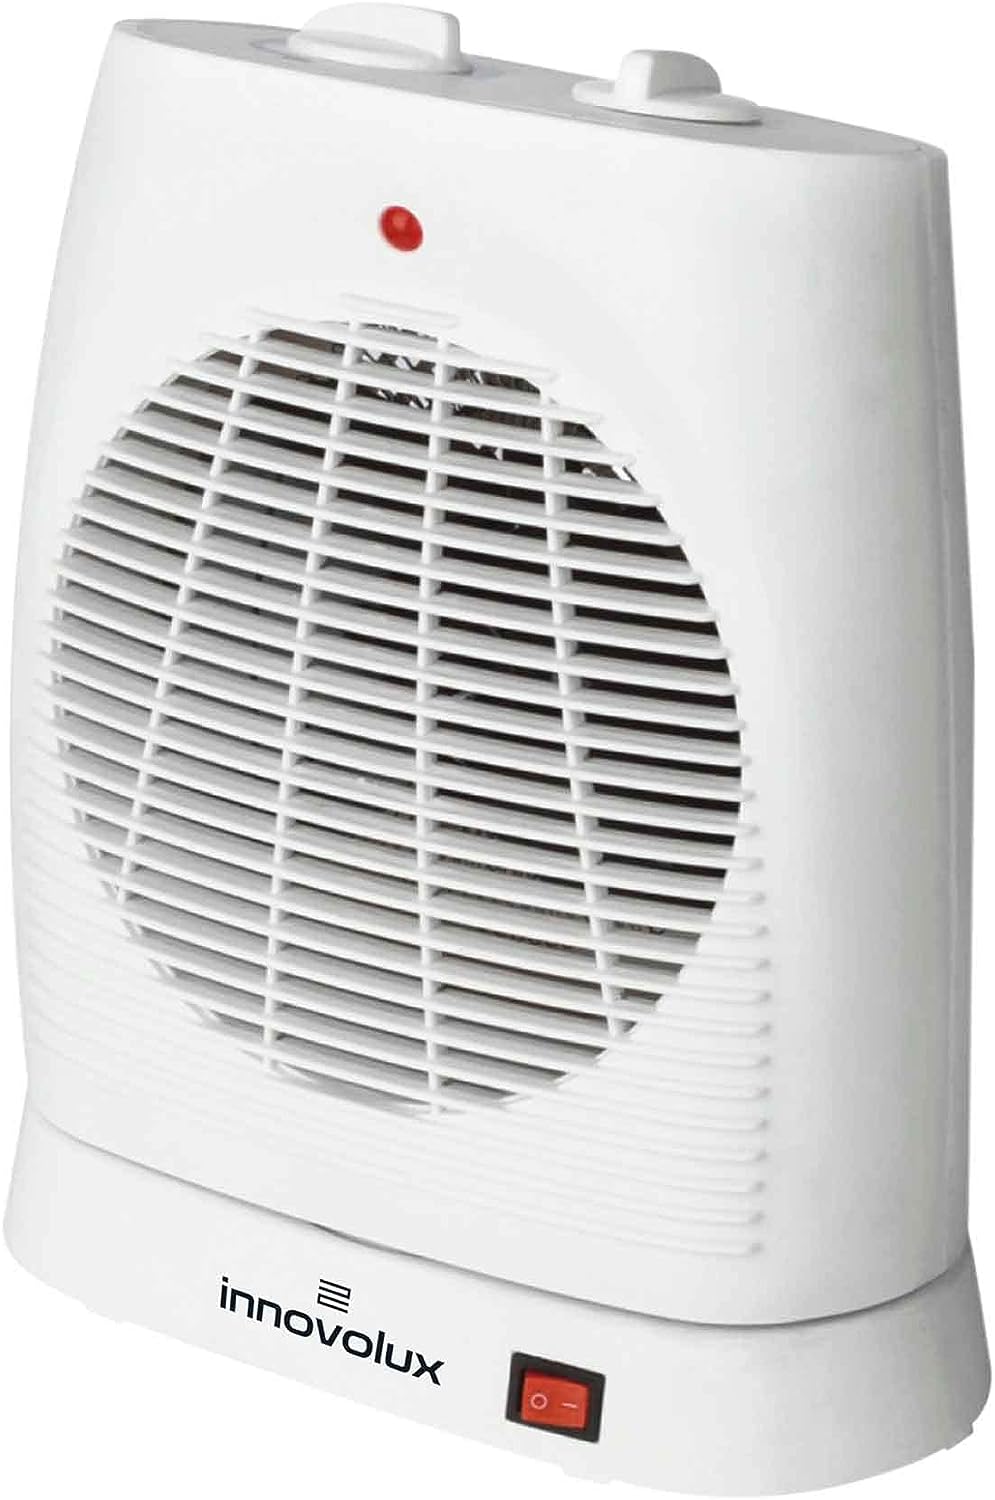 The Secret Home, aquecedor de banheiro branco de baixo consumo com rodas, 3  potências (600/900/1500 W), radiador de piso com termostato ajustável